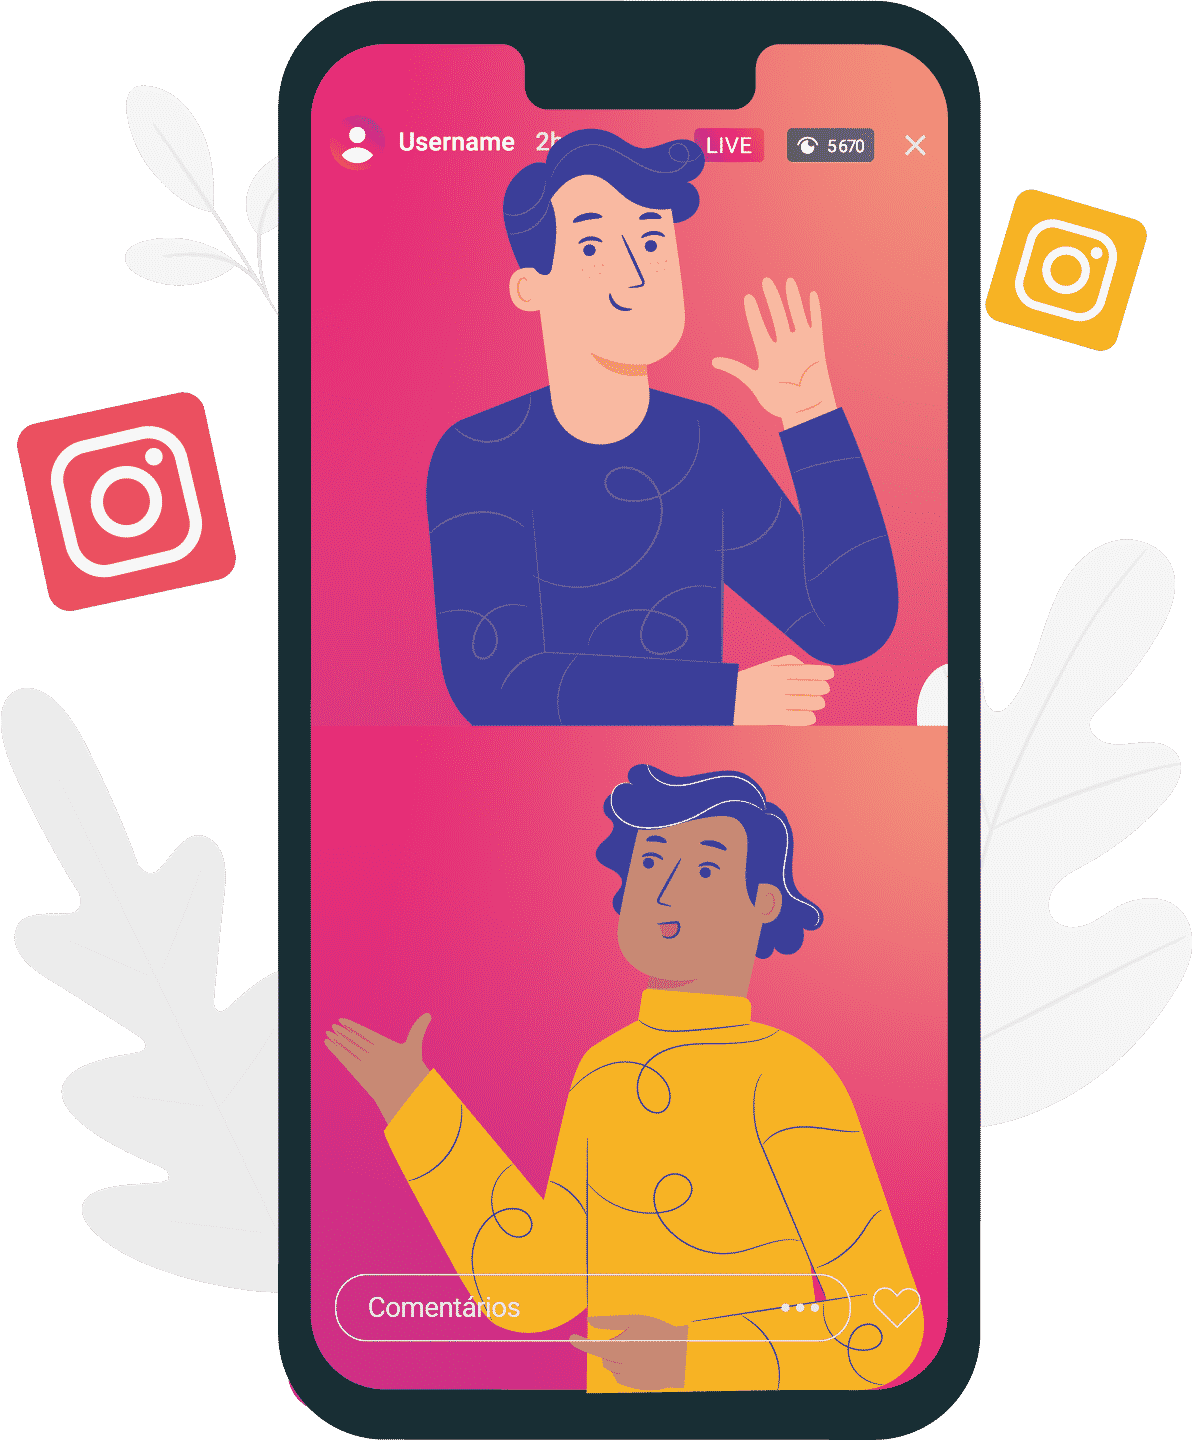 Aprenda como fazer live no instagram com duas pessoas